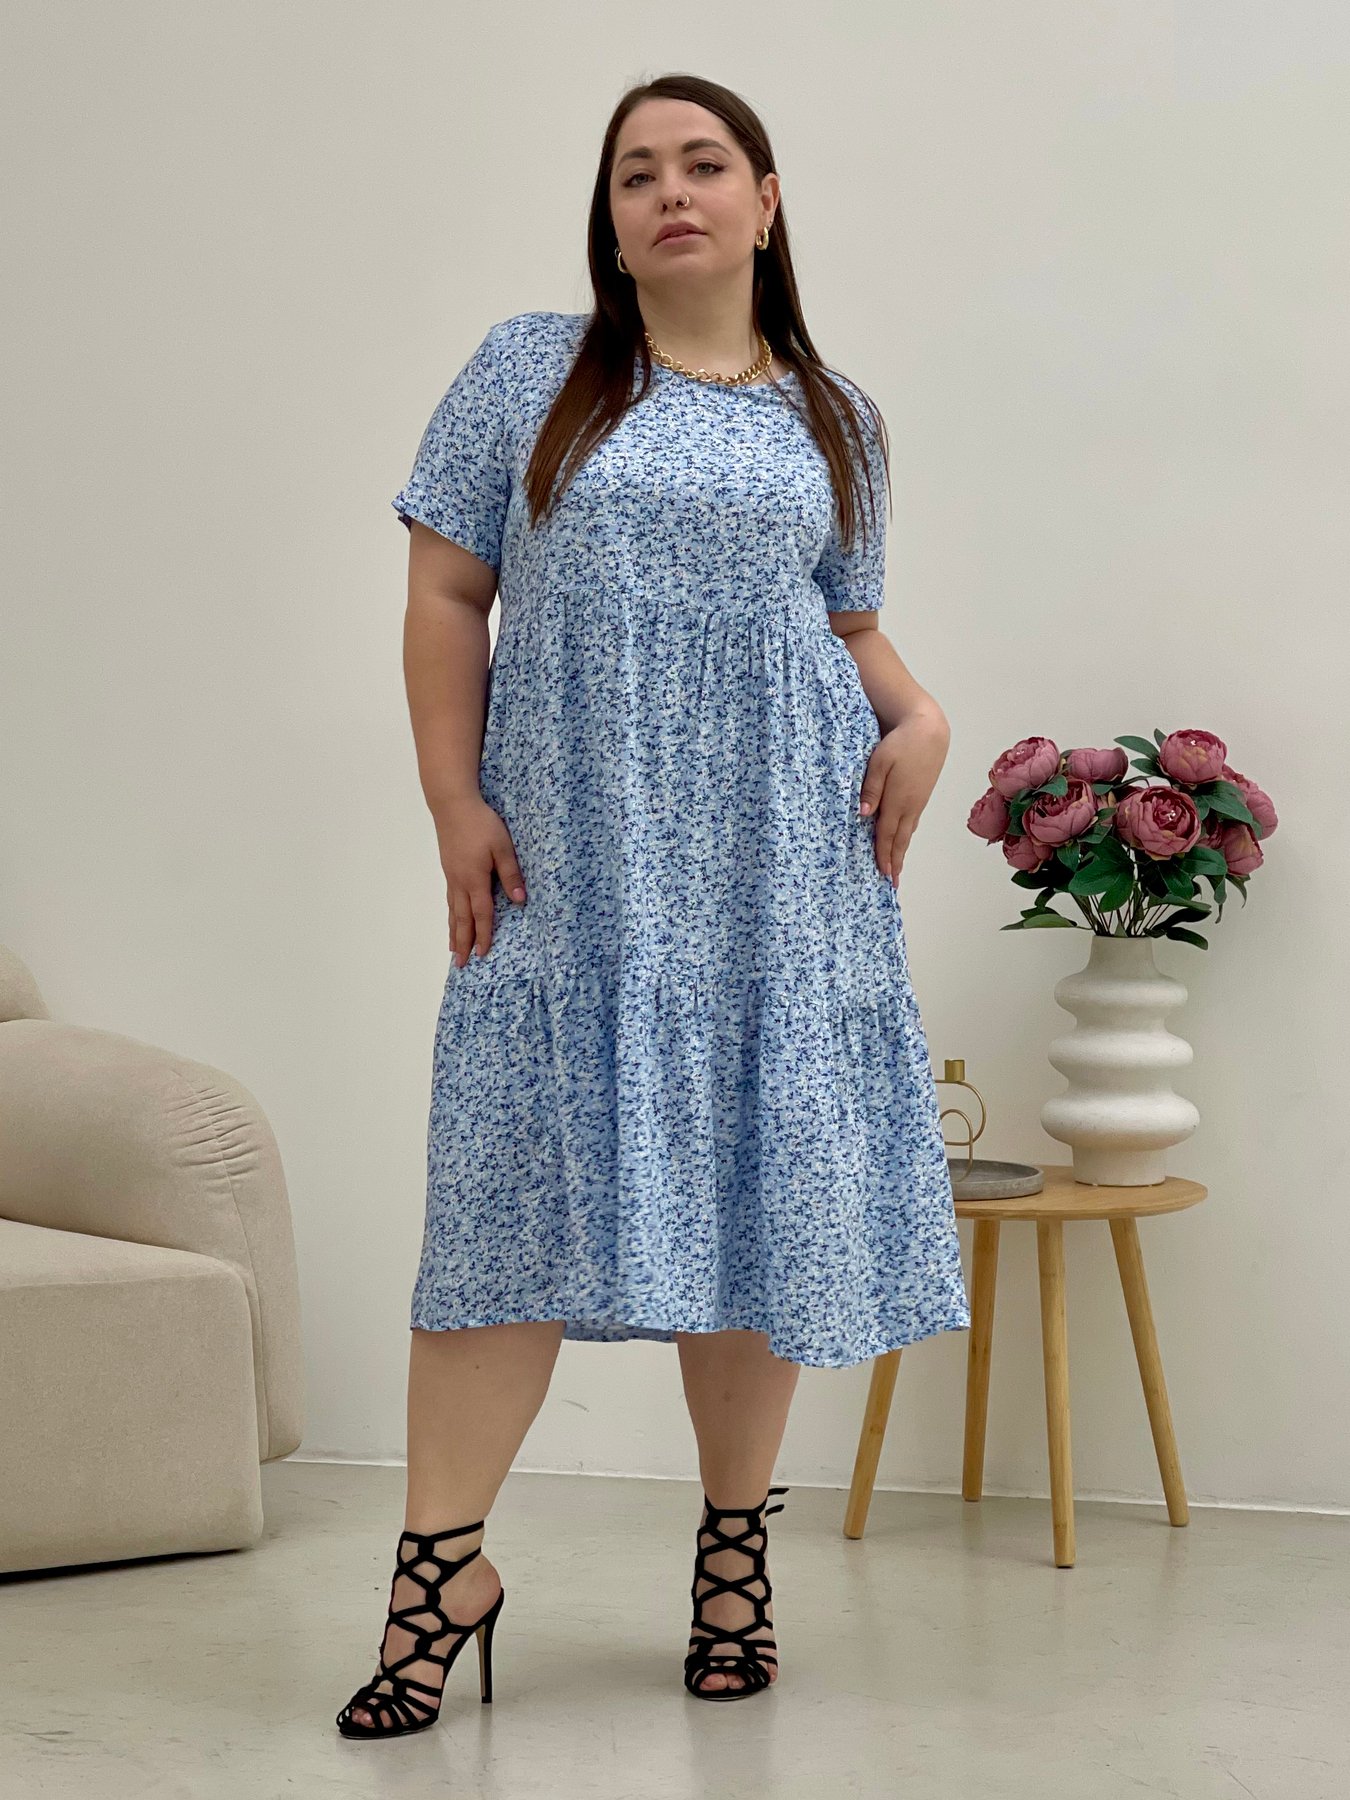 Купить Летнее платье с рюшами в цветочек голубое Merlini Казерта 700001265 размер 50-52 (2XL-3XL) в интернет-магазине